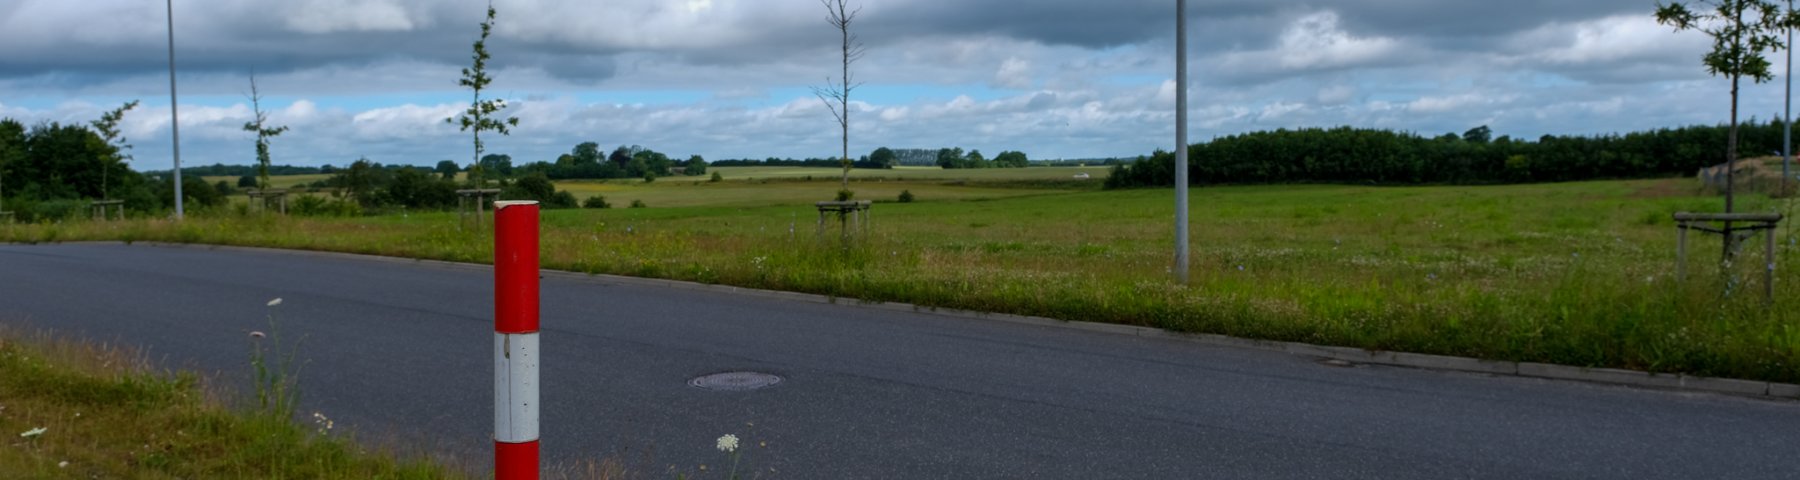 Udstykning af erhvervsjord ved Venusvej i Kolding Nord. Udstykningen består af grønne marker - en enkelt skelpæl ses i forgrunden og en vej skærer sig gennem området